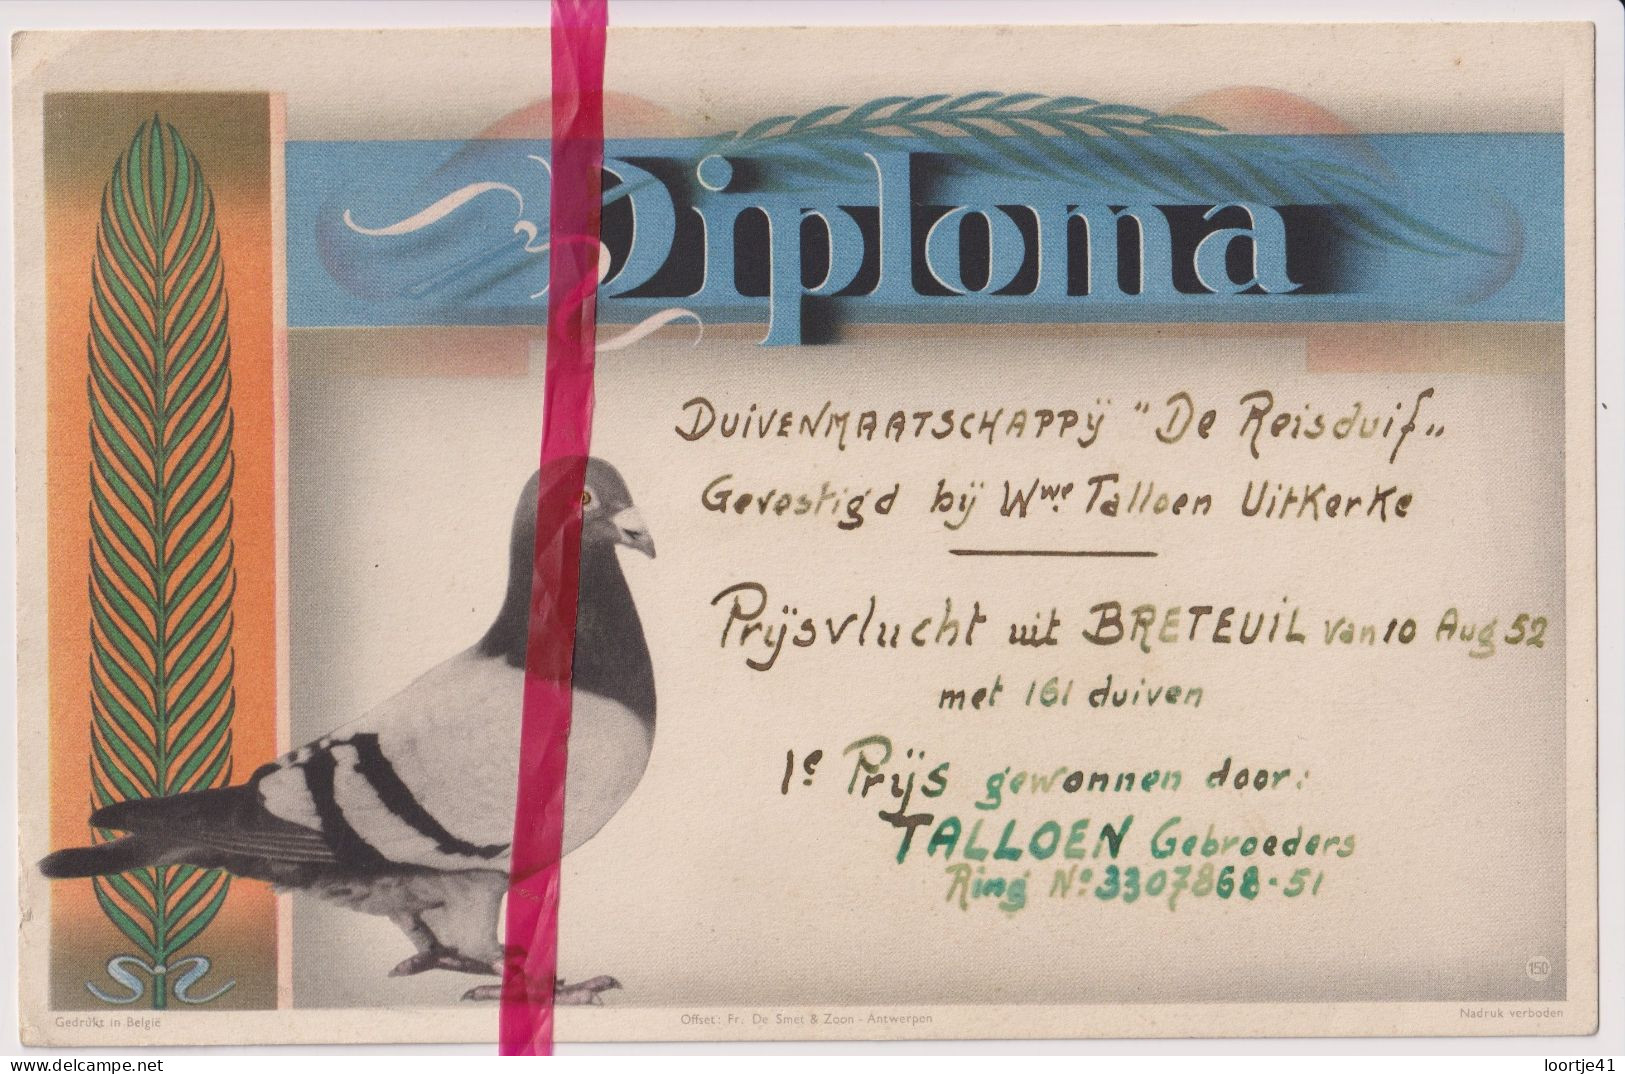 Diploma Duiven 1° Prijs Talloen Gebrs - Uitkerke 1952 - Maatschappij De Reisduif - Diploma & School Reports